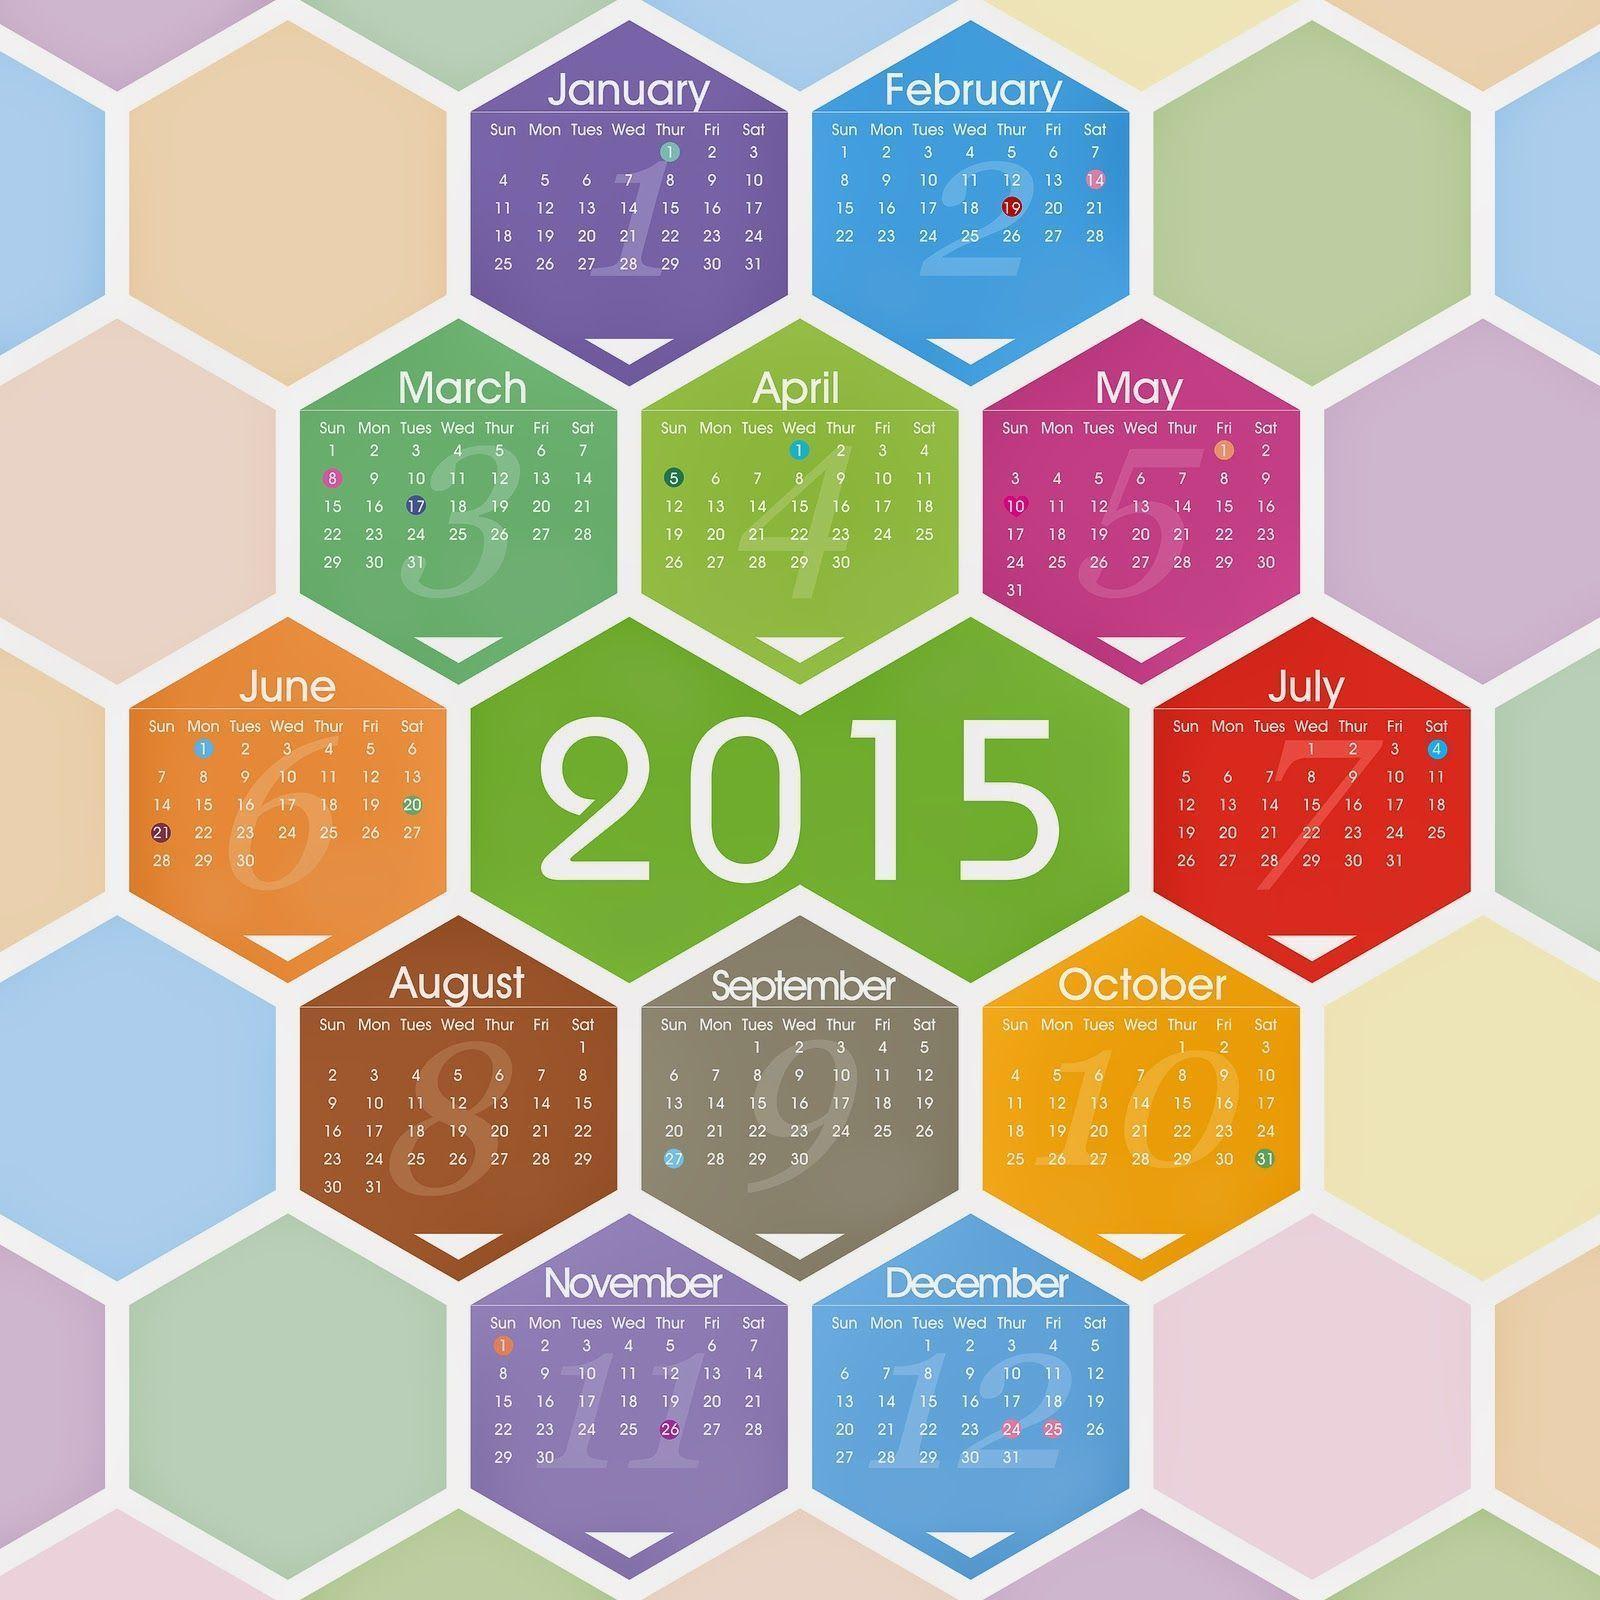 Happy new year 2015 HD calendar Ideas